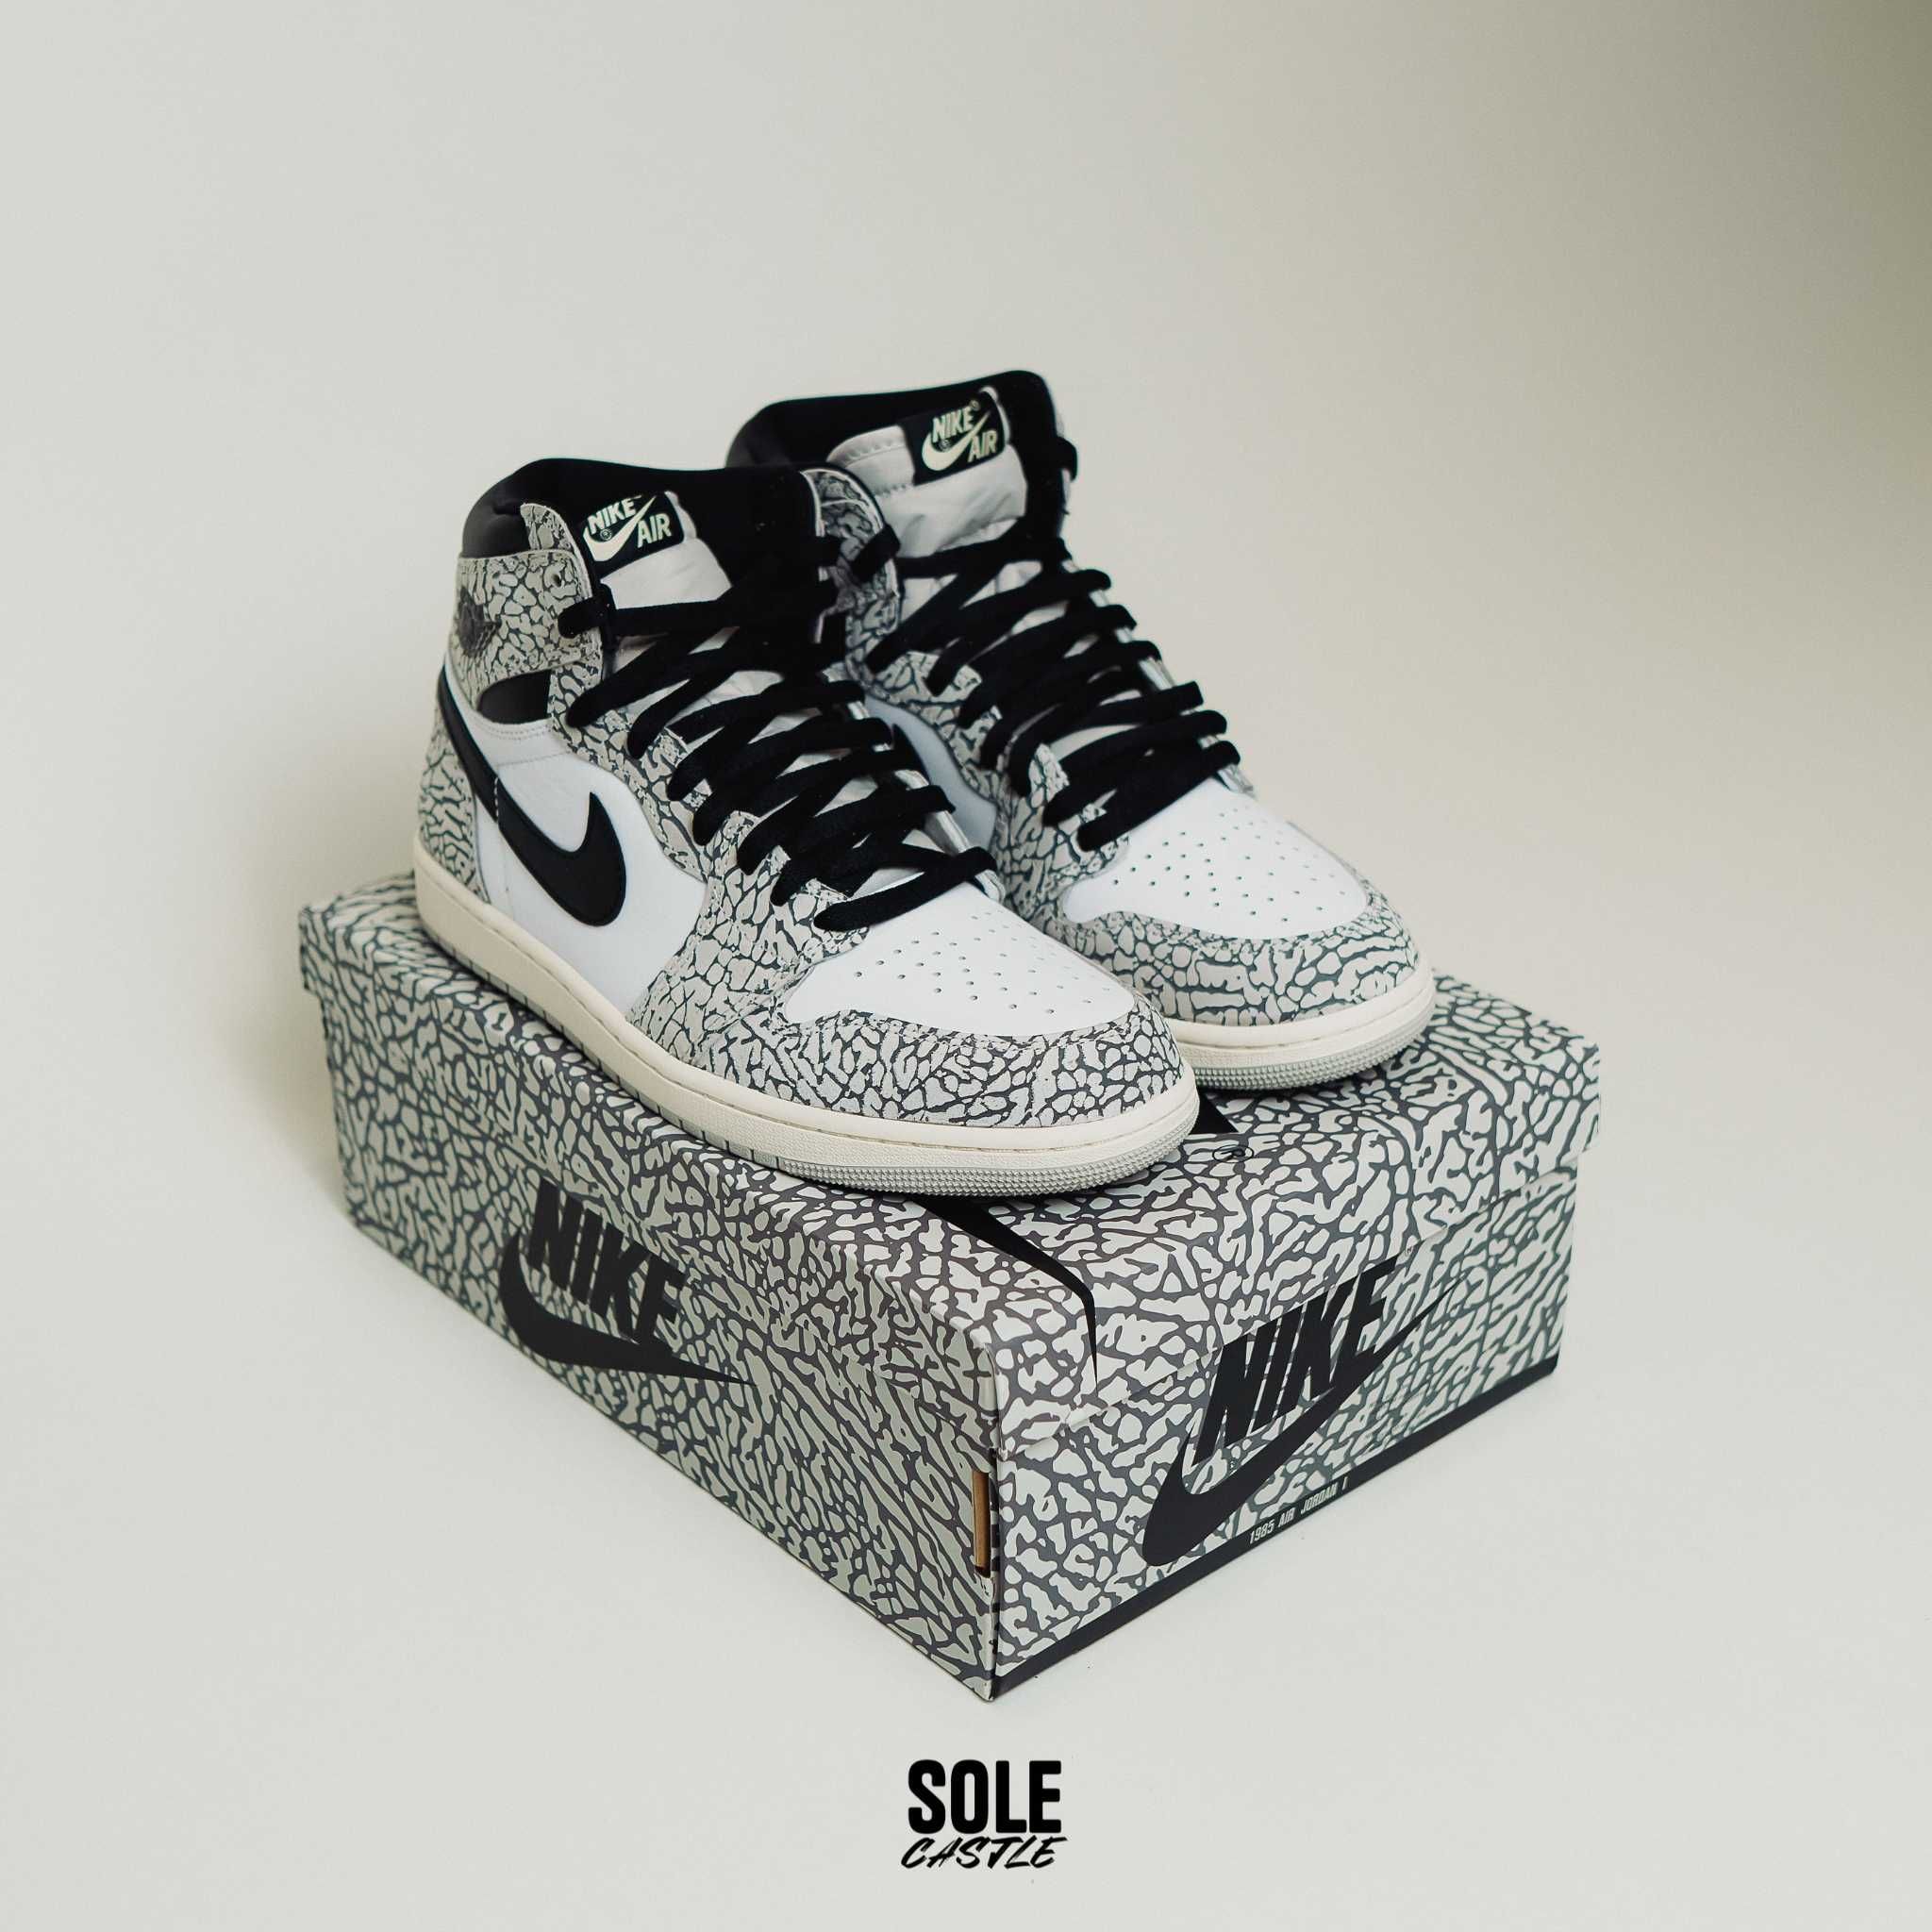 Nike Air Jordan 1 High OG "White Cement" (nu puma, dunk sau yeezy)